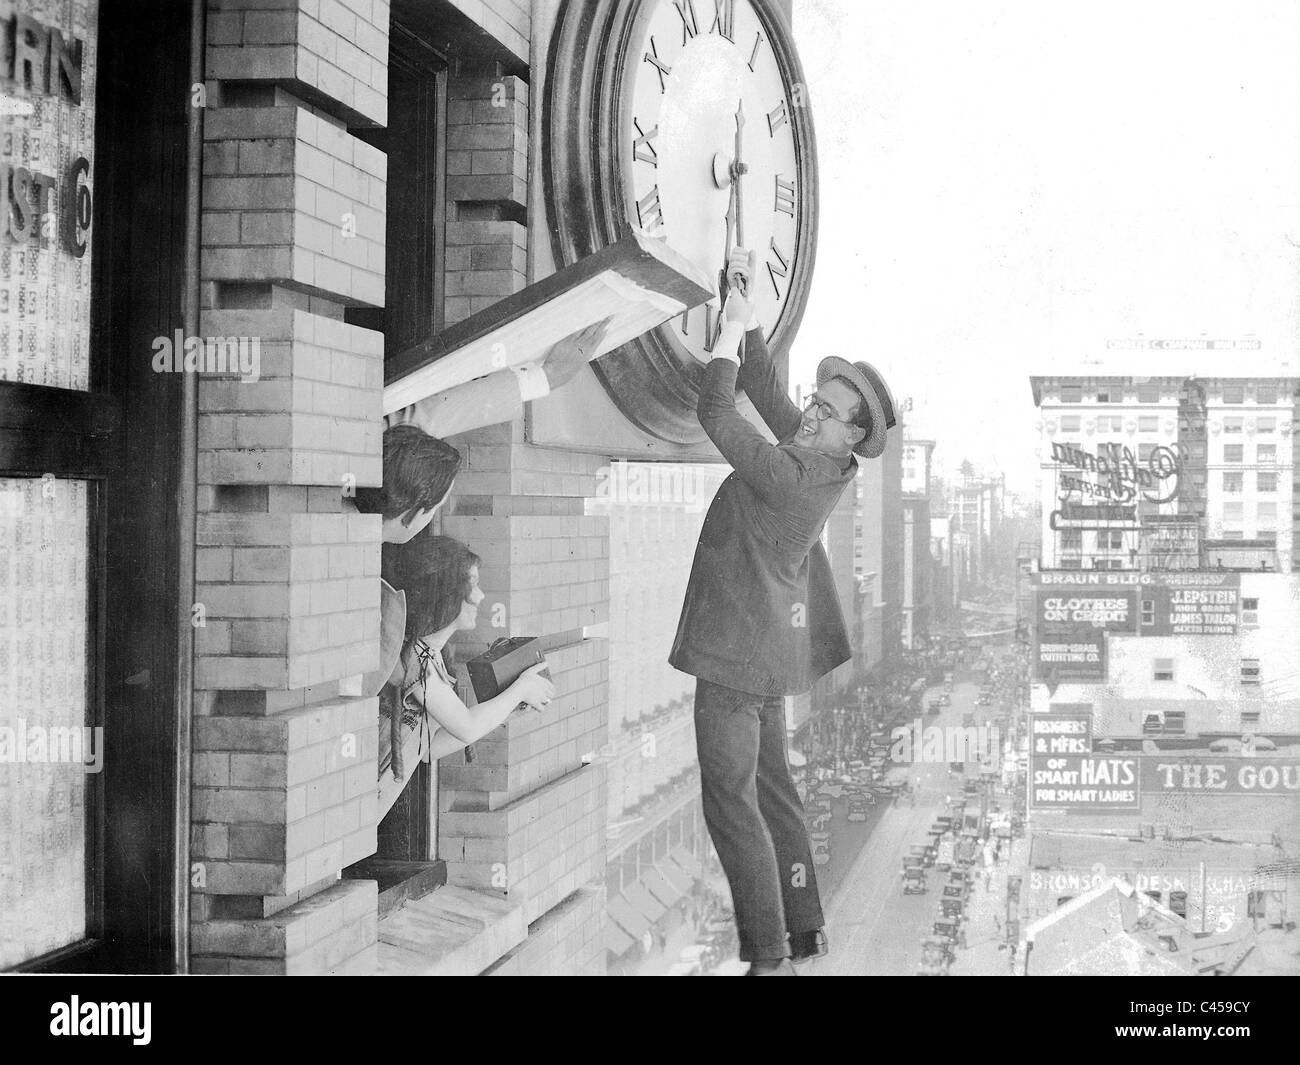 Harold Lloyd in a film scene from 'Safety Last' (Ausgerechnet Wolkenkratzer  Stock Photo - Alamy